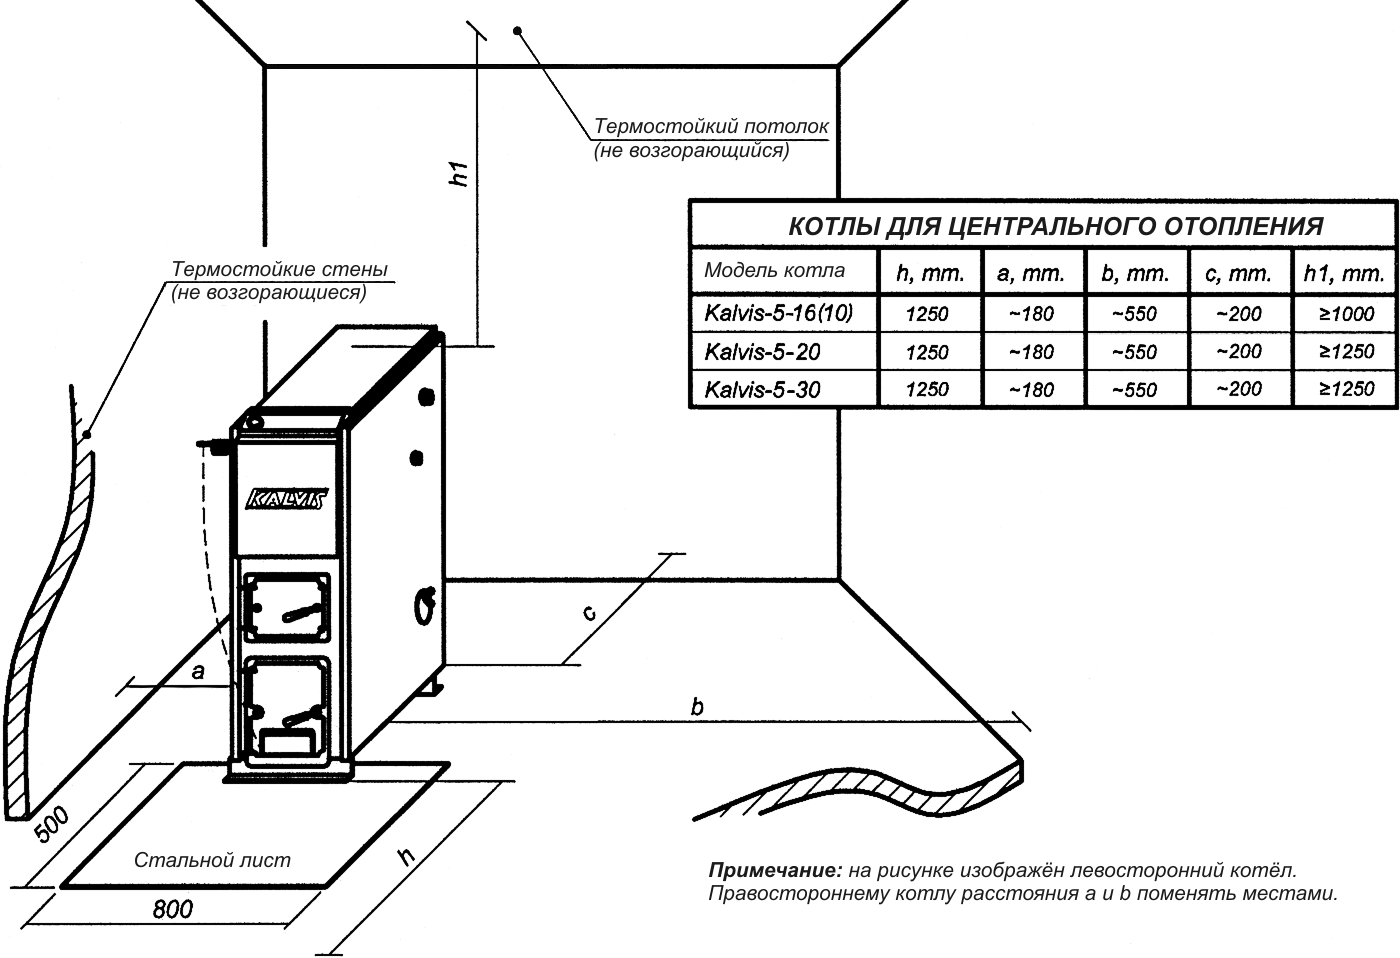 Нормы установки газового напольного котла расстояние от стен